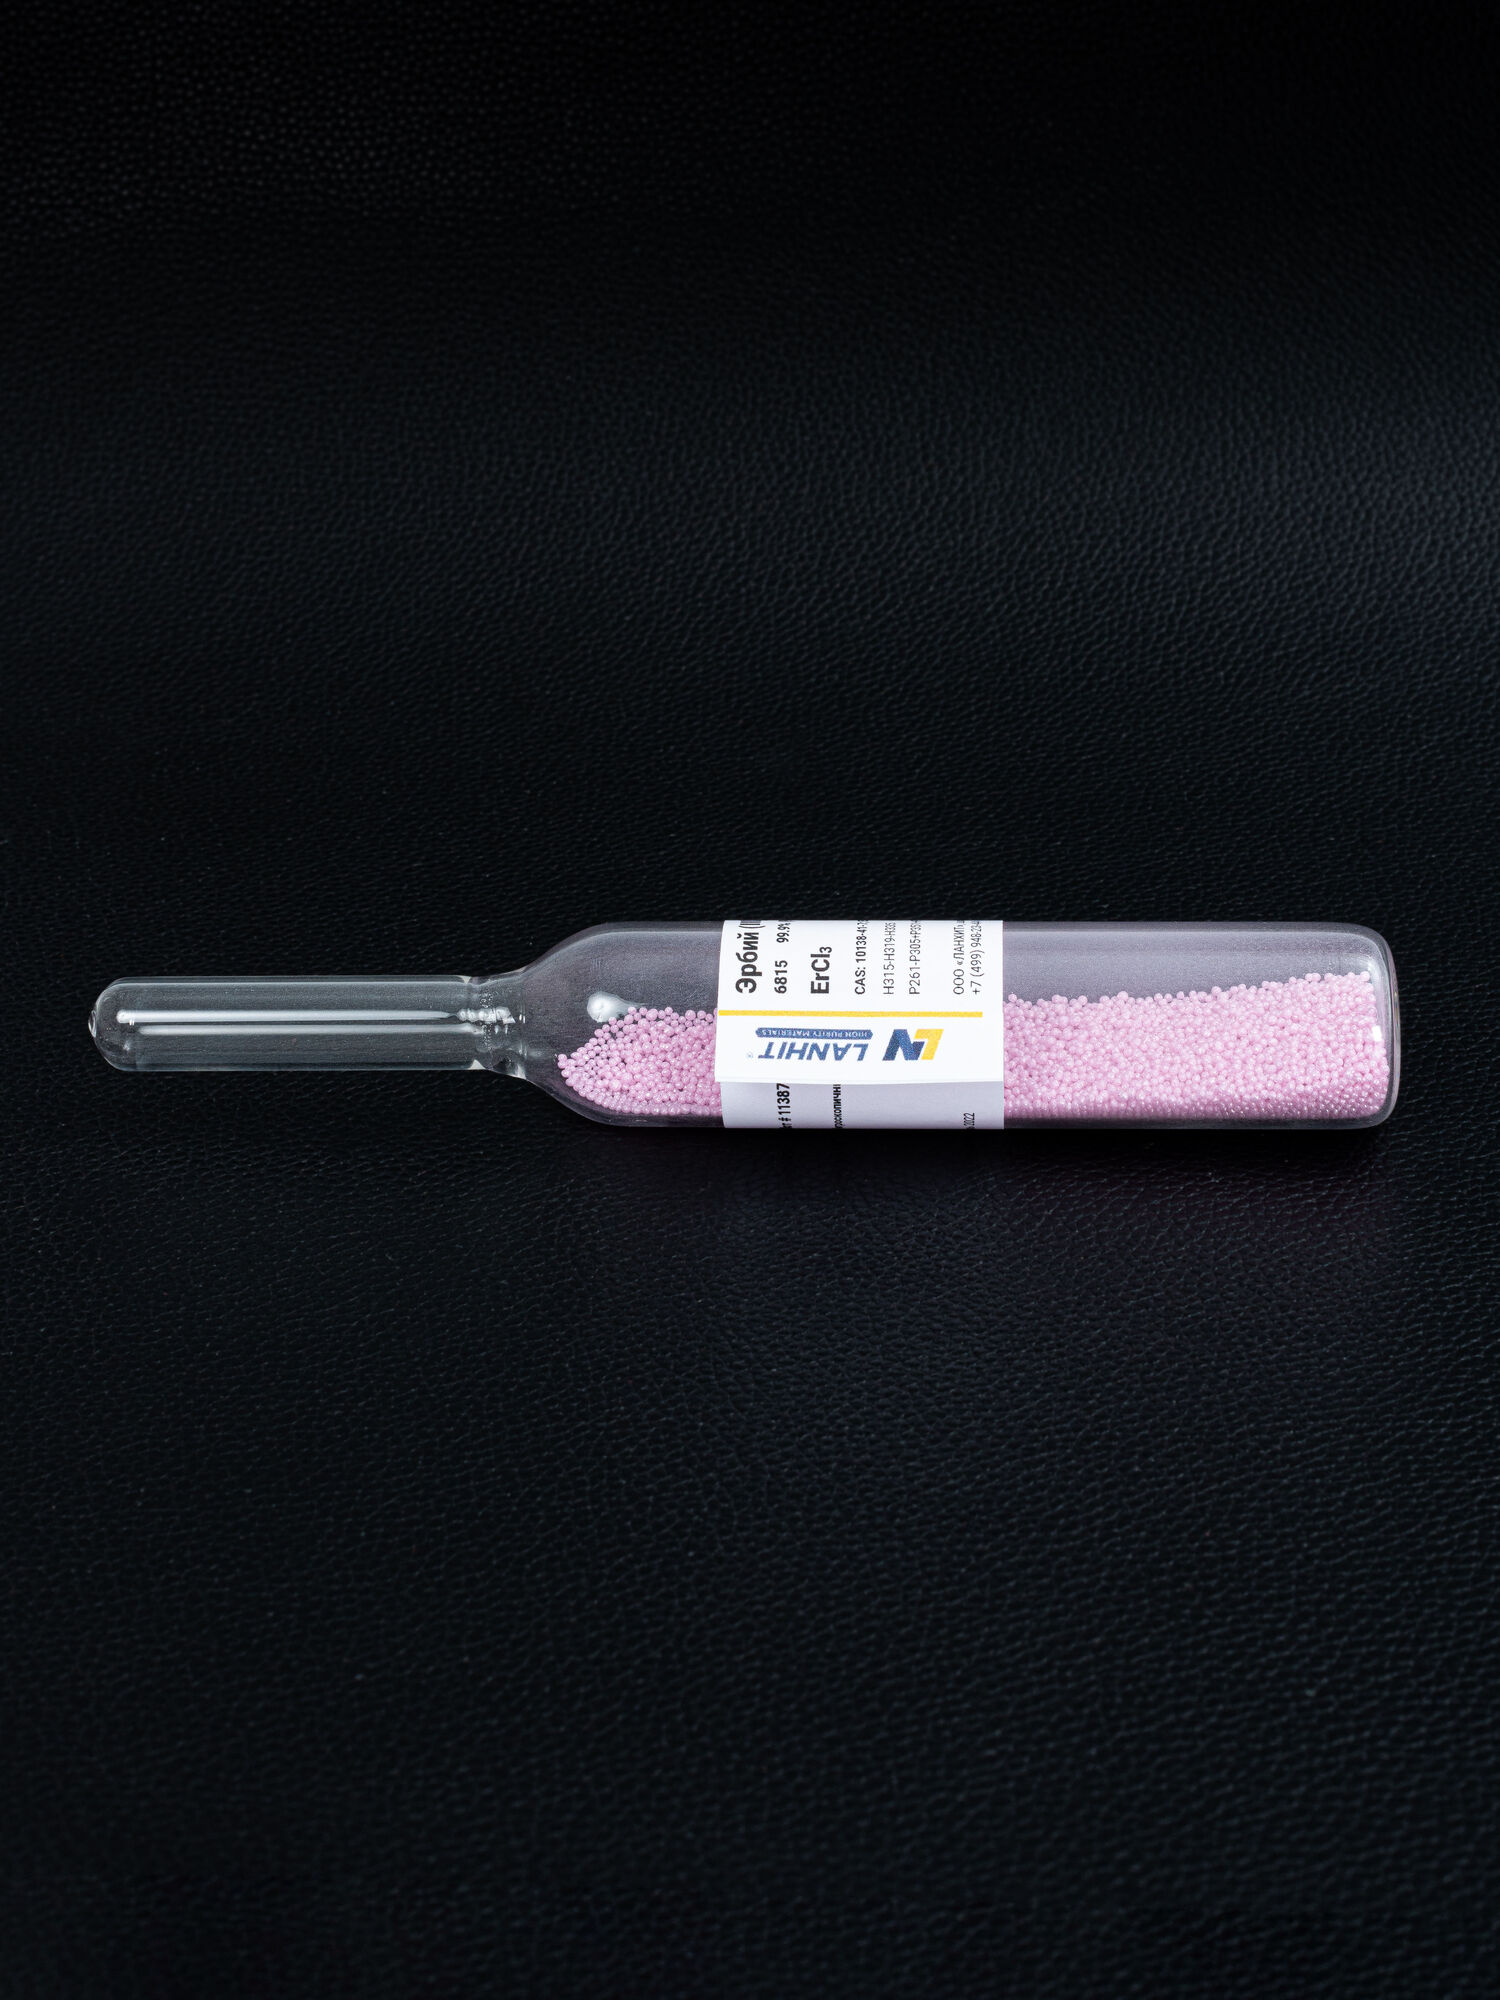 Эрбий (III) хлорид, ультра сухой, 99.99% (РЗМ), -10 меш гранулы